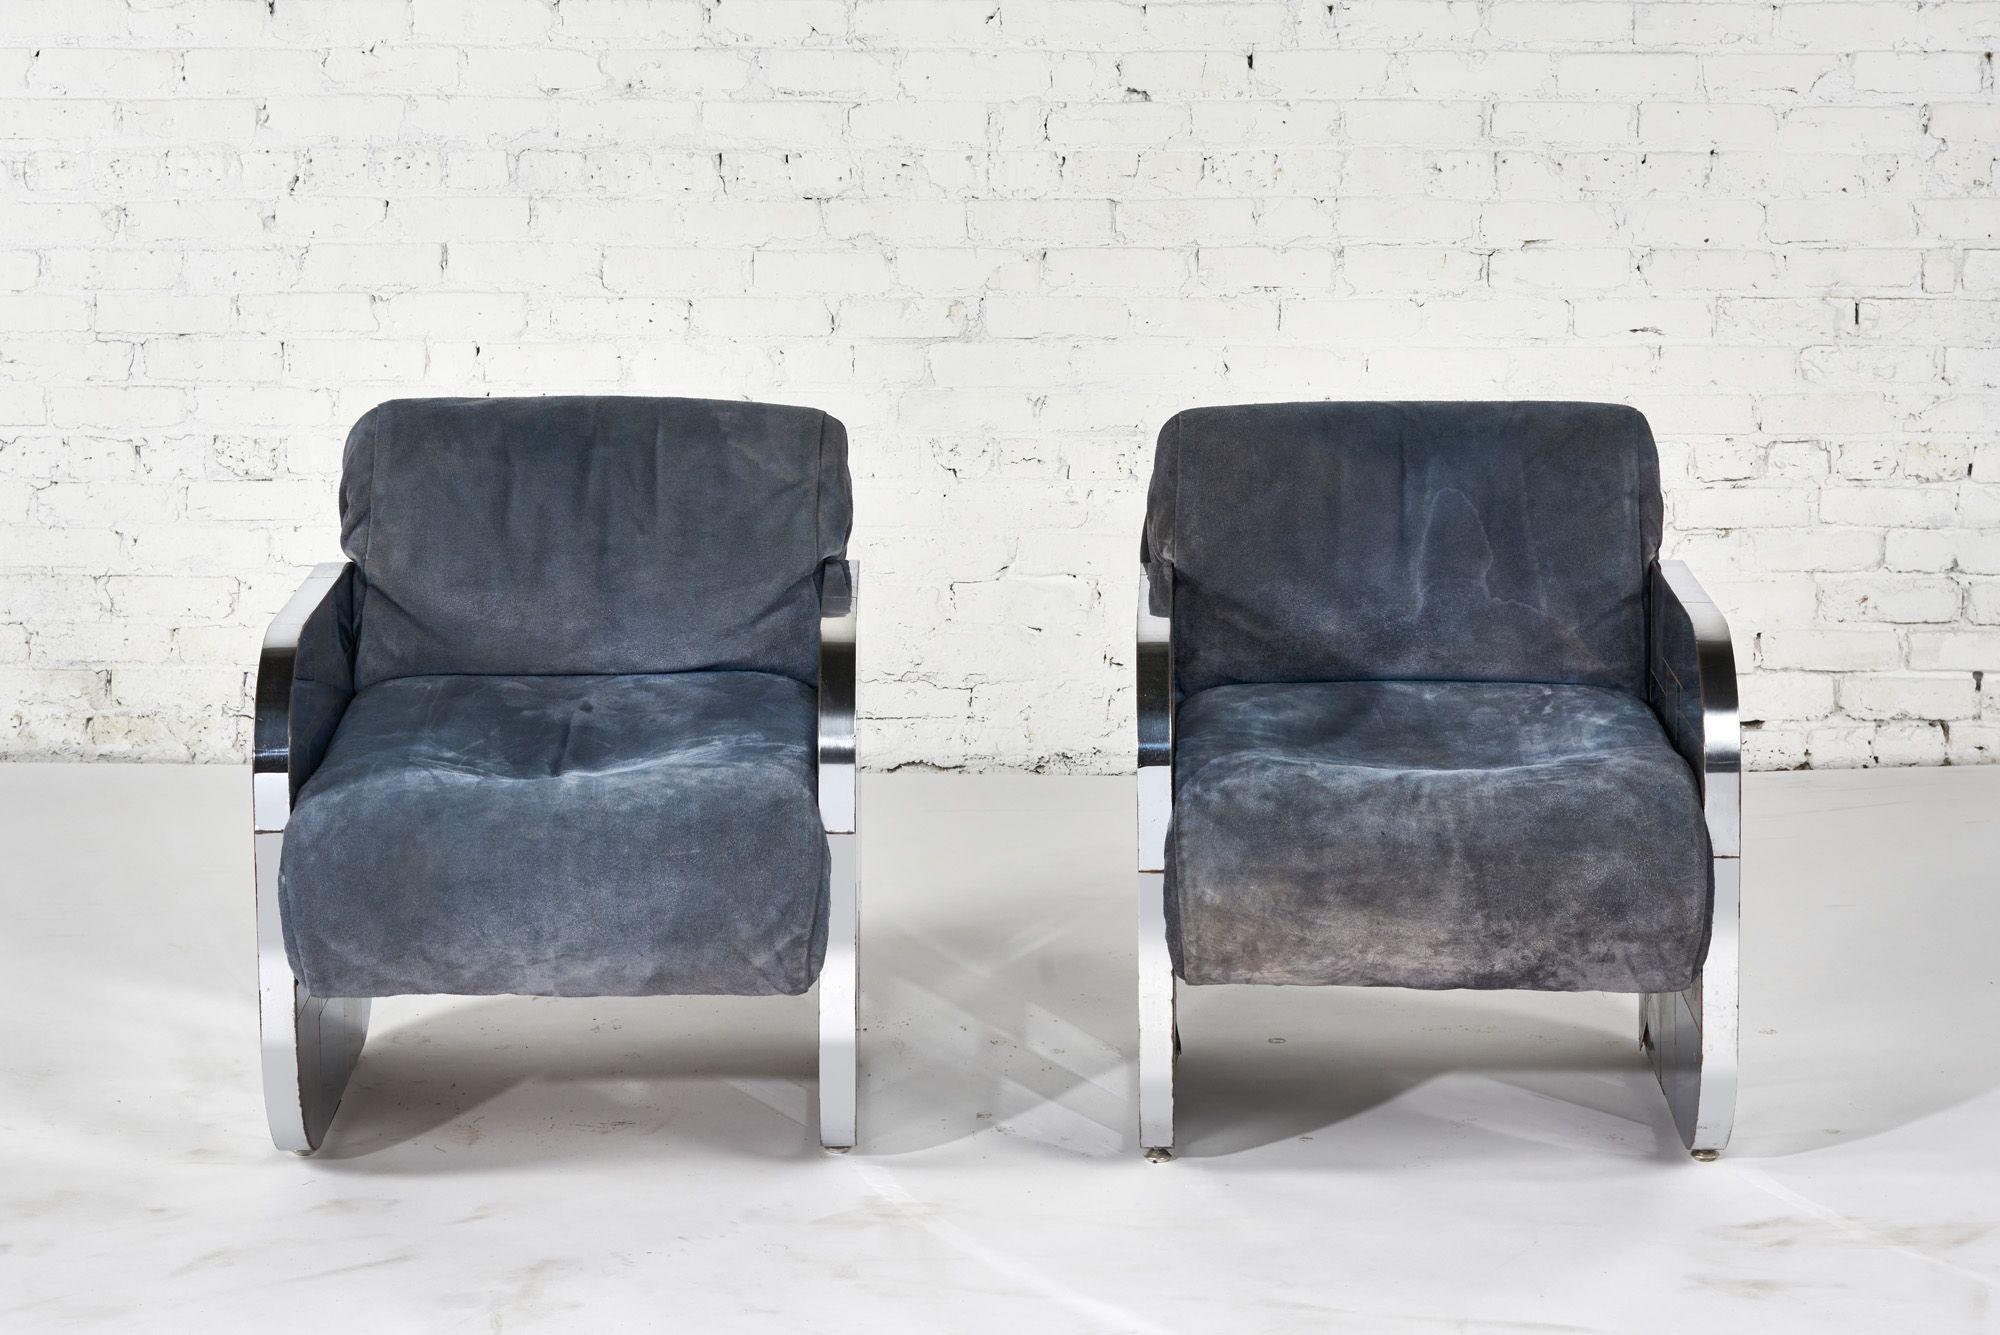 Une paire rare de chaises longues Paul Evans Cityscape Patchwork, 1970.  La tapisserie est en daim bleu d'origine. Patchwork est construit à partir de cadres en tôle d'acier.  avec un contraste de chrome poli.